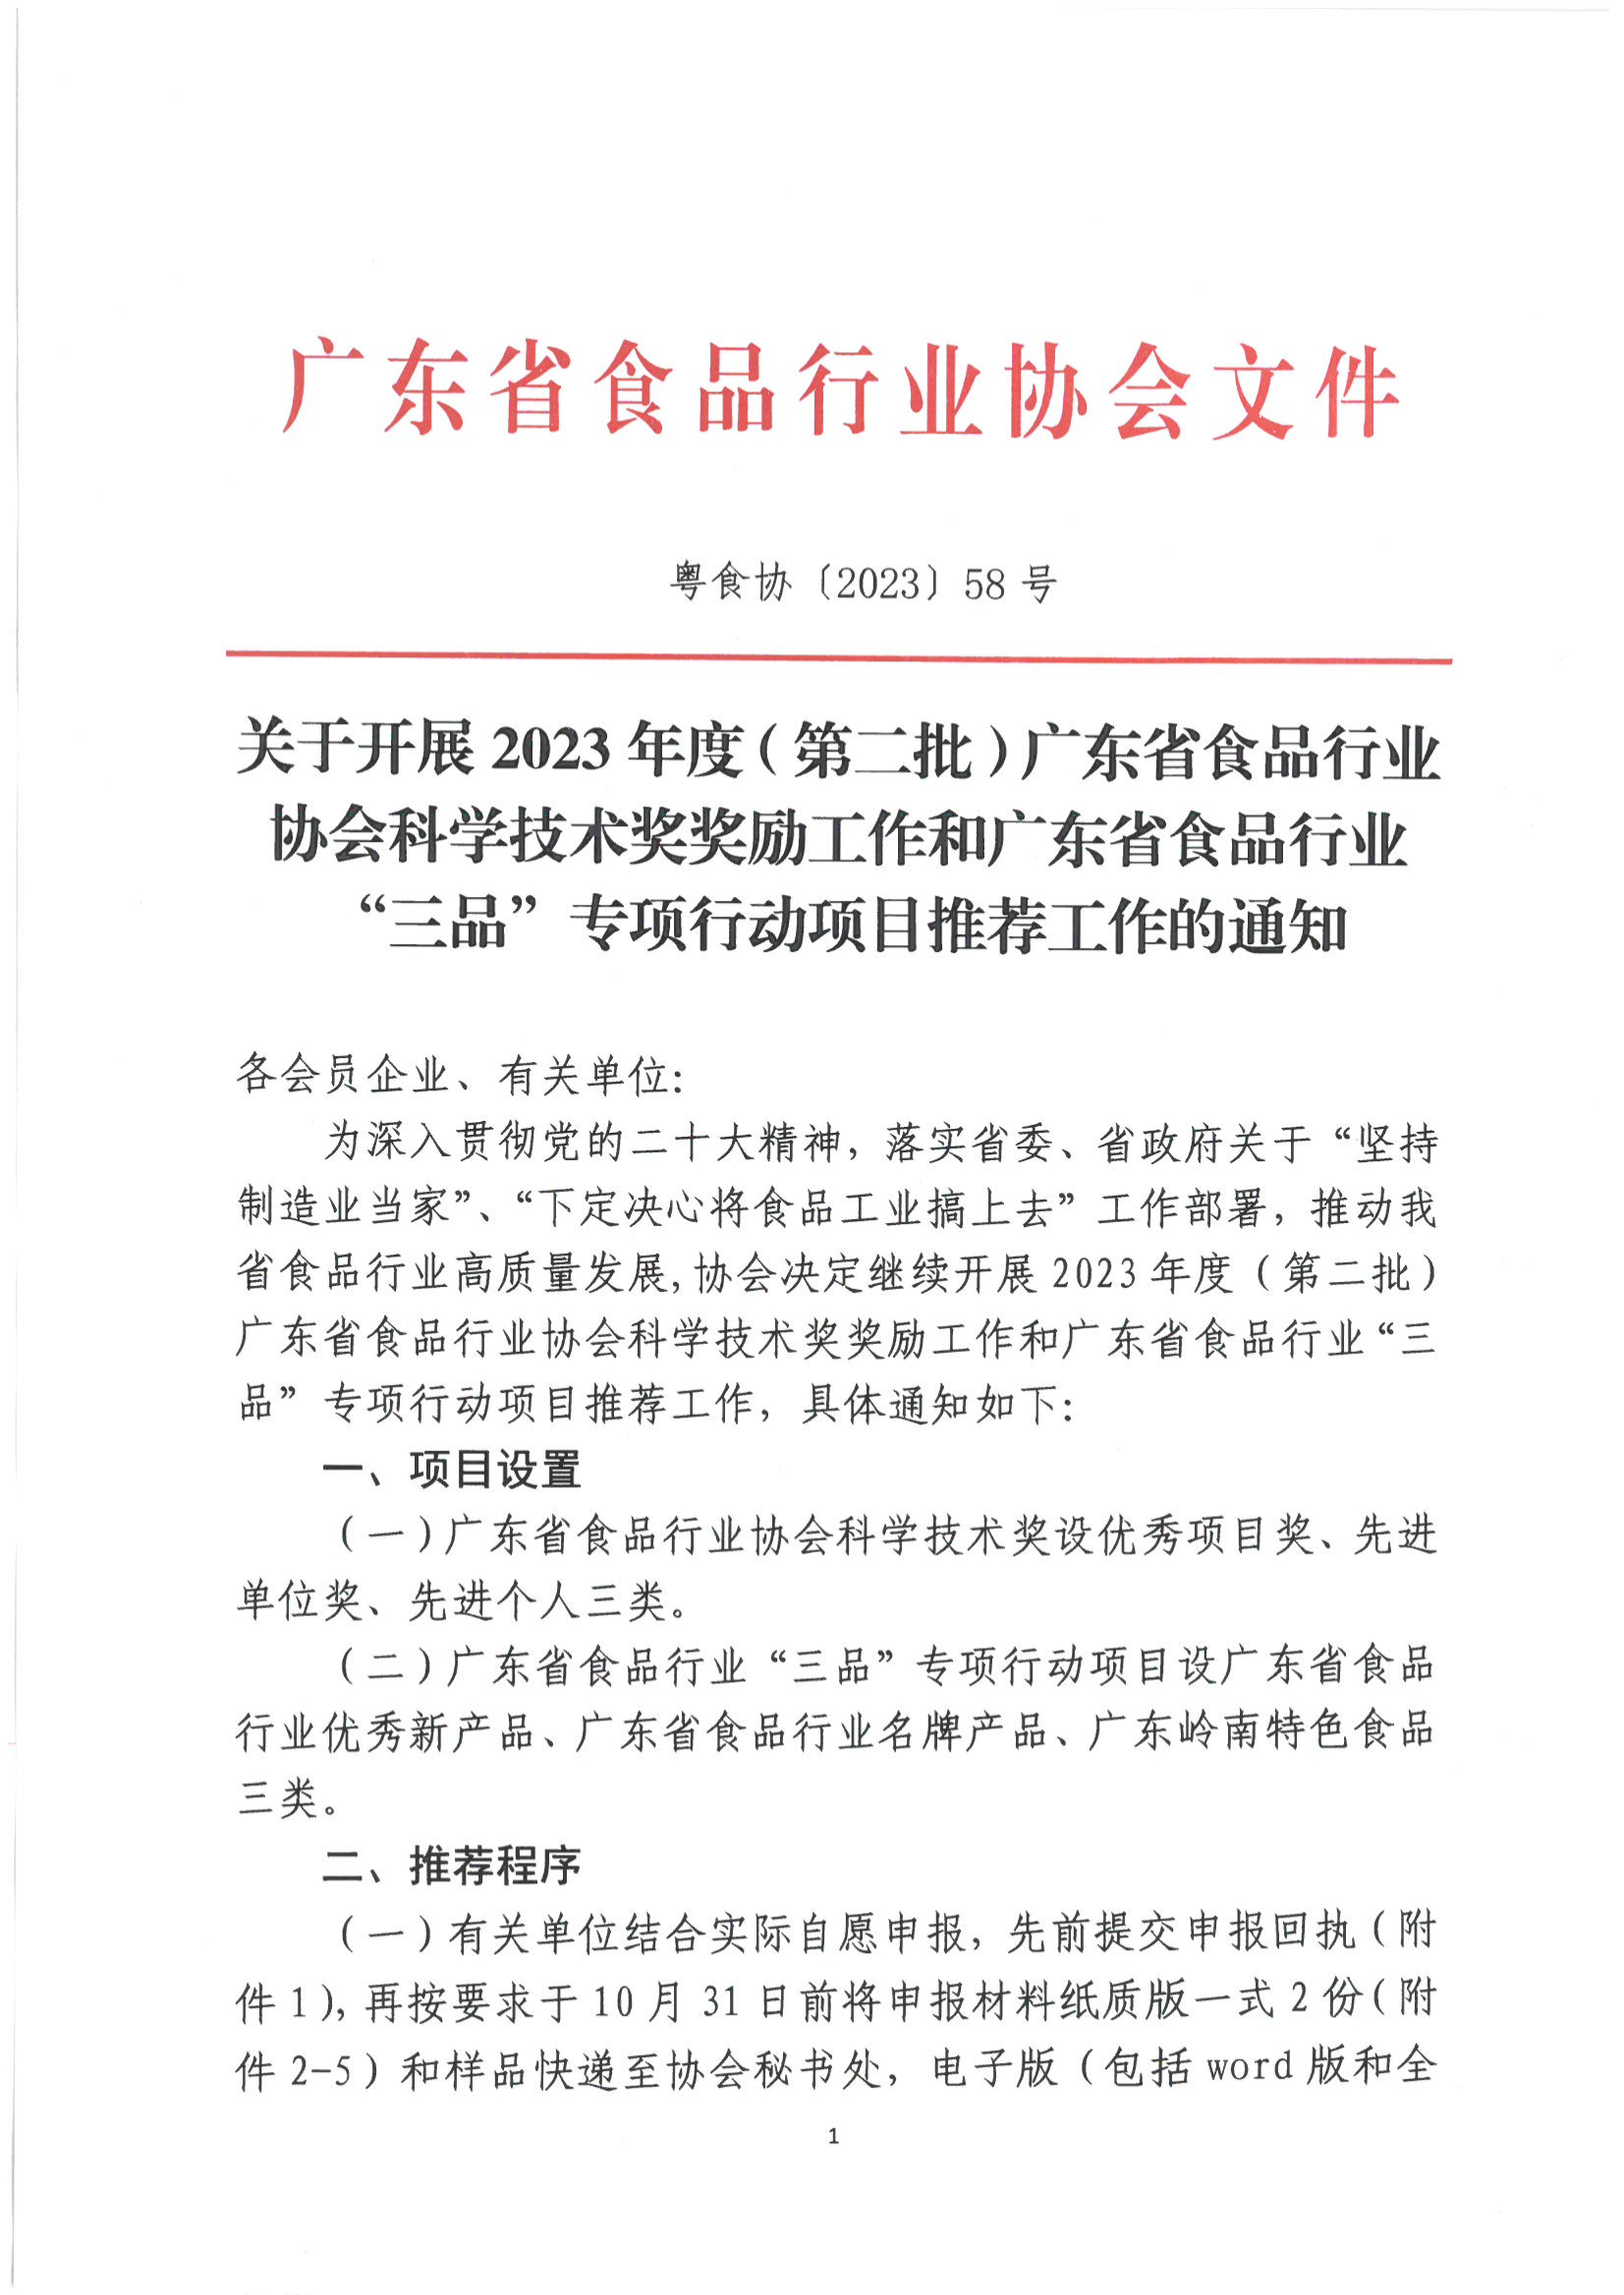 关于开展2023年度（第二批）广东省食品行业协会科学技术奖奖励工作和广东省食品行业“三品”专项行动项目推荐工作的通知